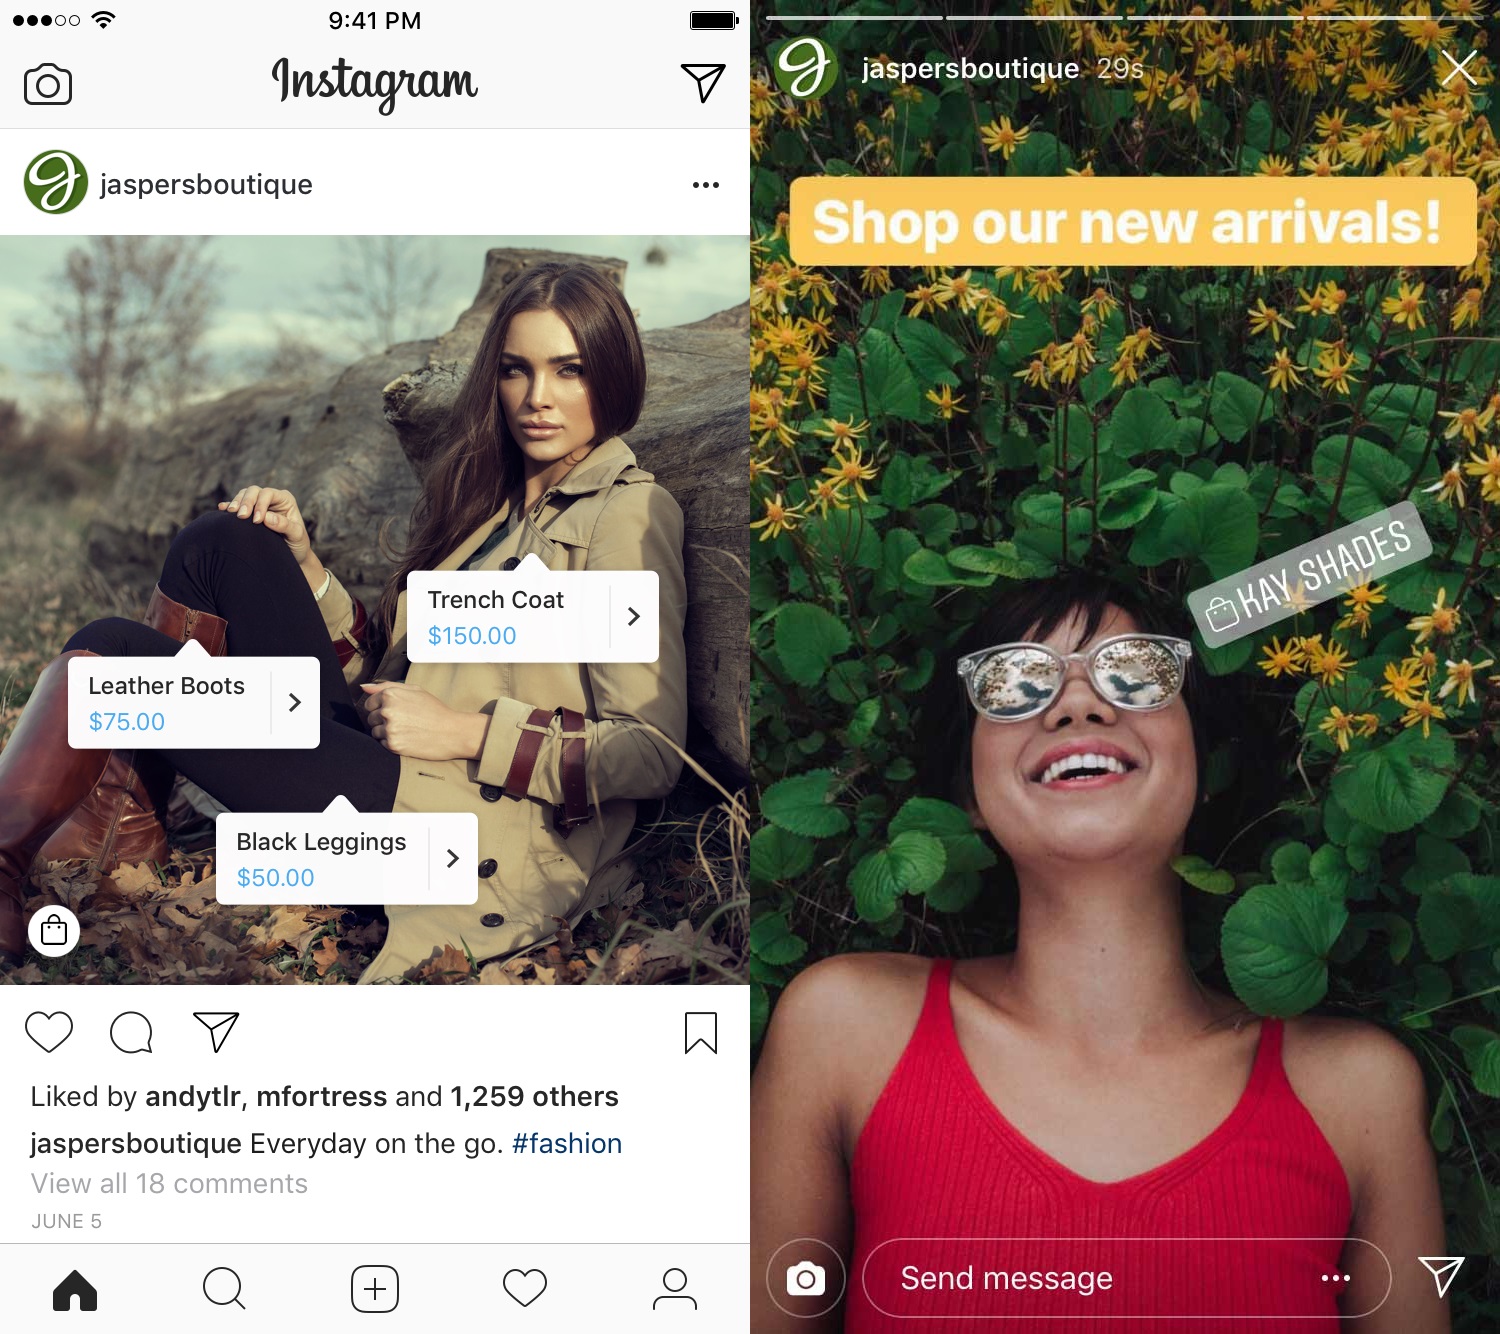 como vender no instagram - print do catálogo de produtos no feed e nos stories do Instagram- 